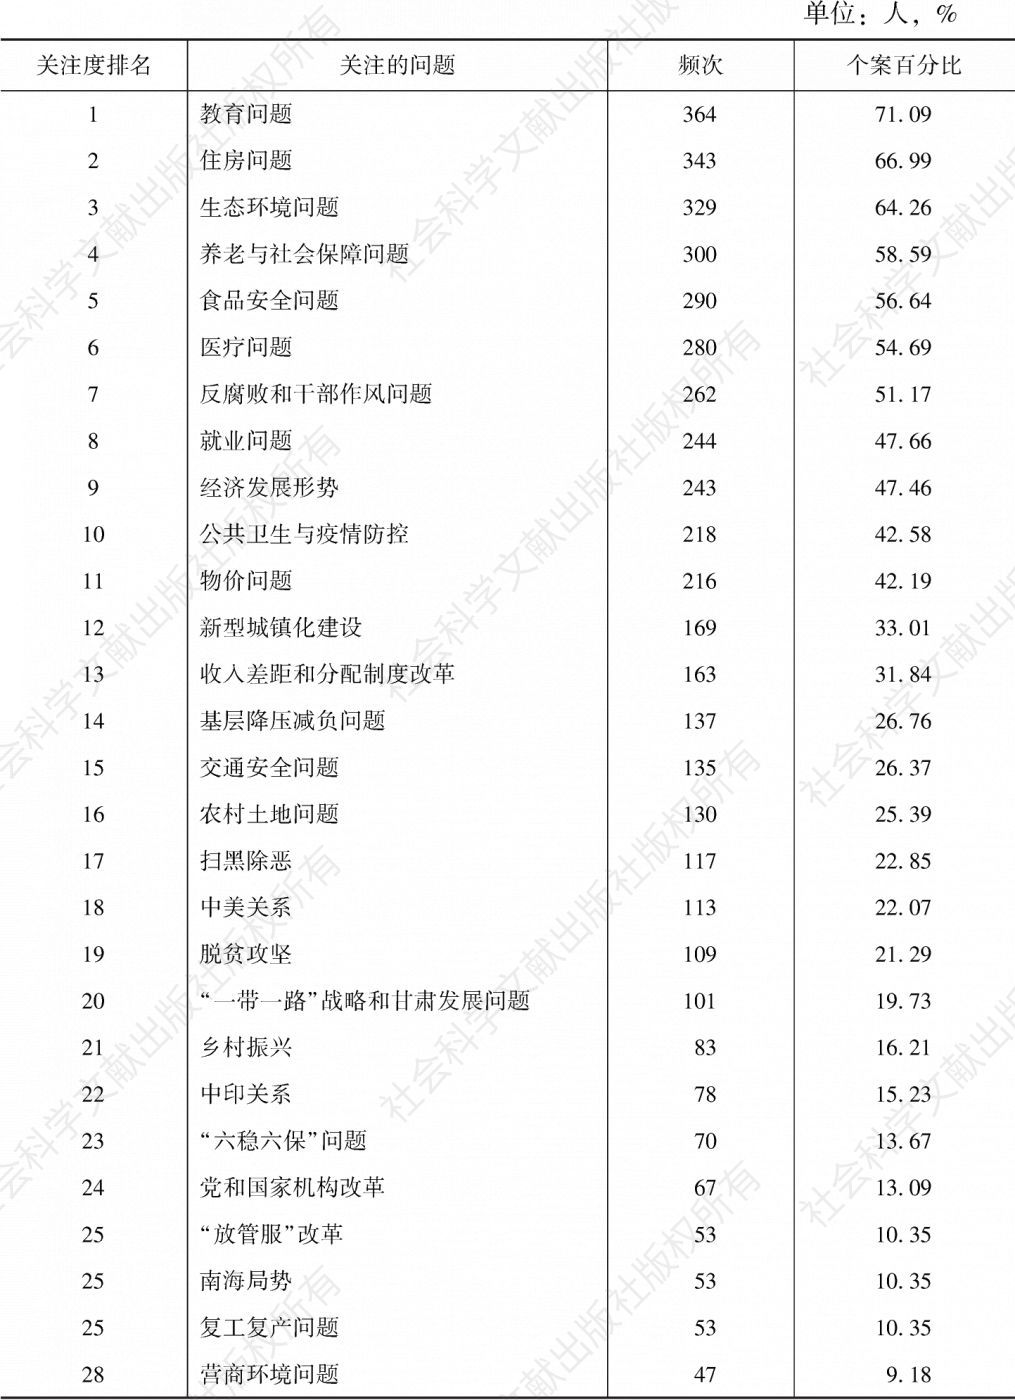 表1 2020年甘肃民众对社会热点问题的关注度统计